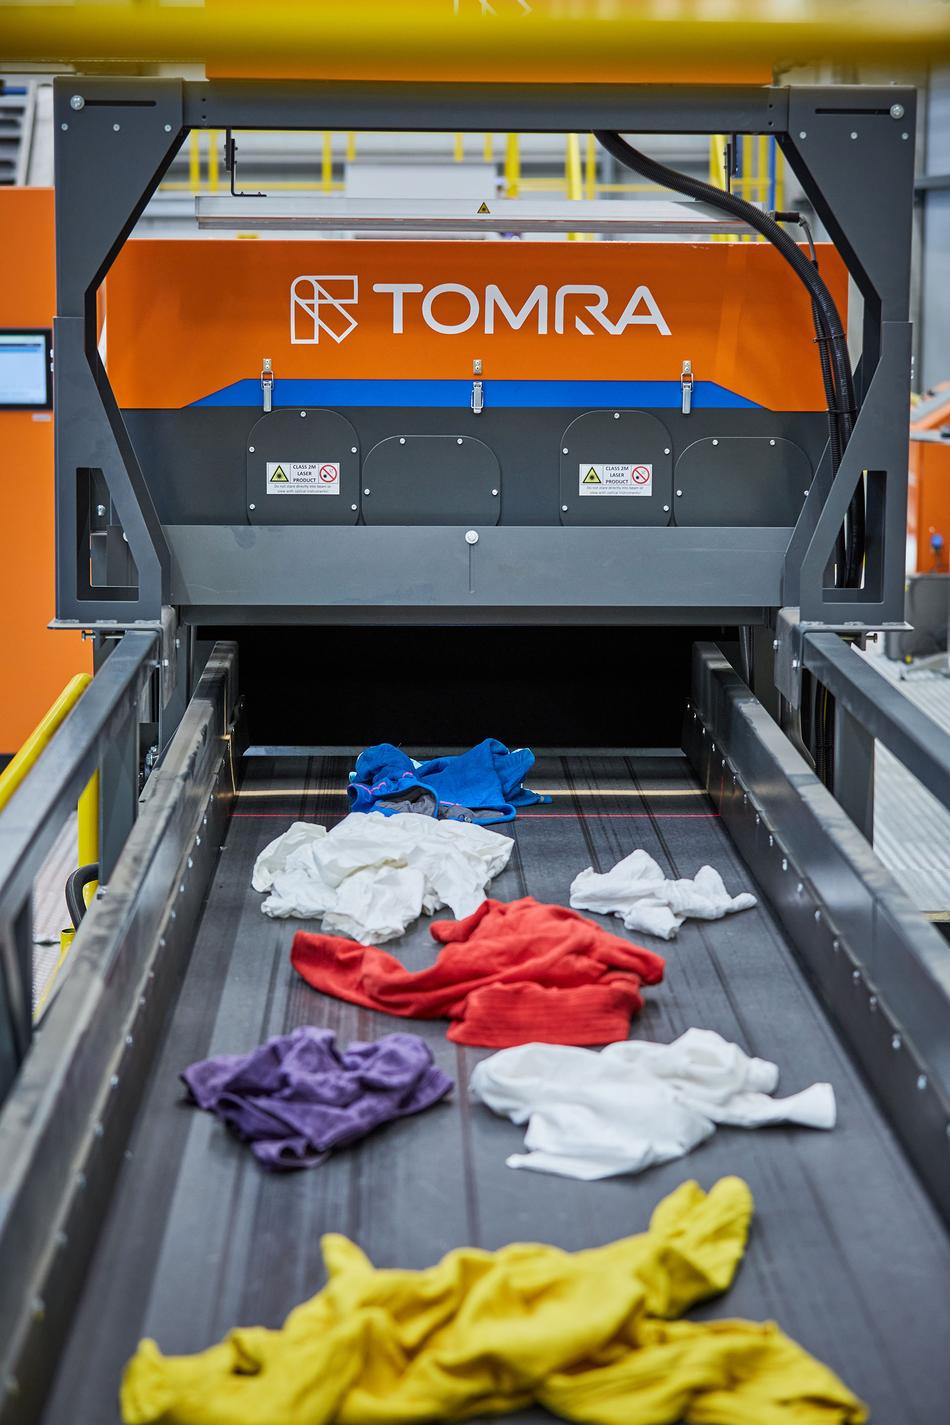 TOMRA Makinesinin ayıklama bandındaki tekstil ürünleri